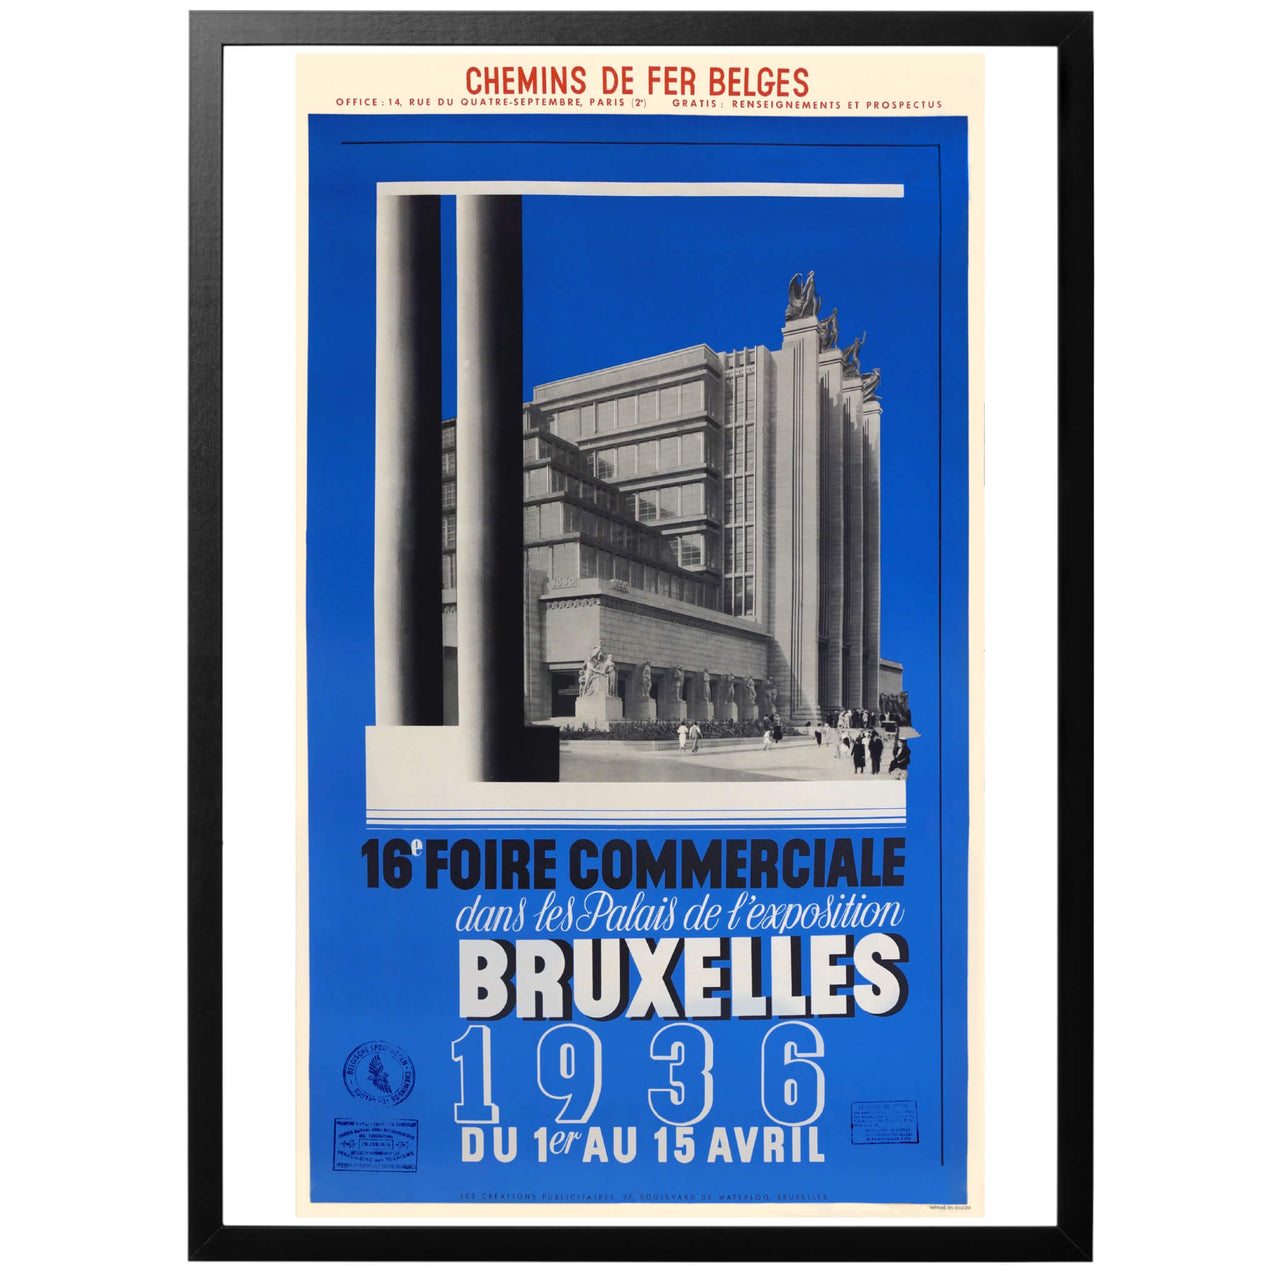 Bruxelles Commercial Fair 1936 Poster